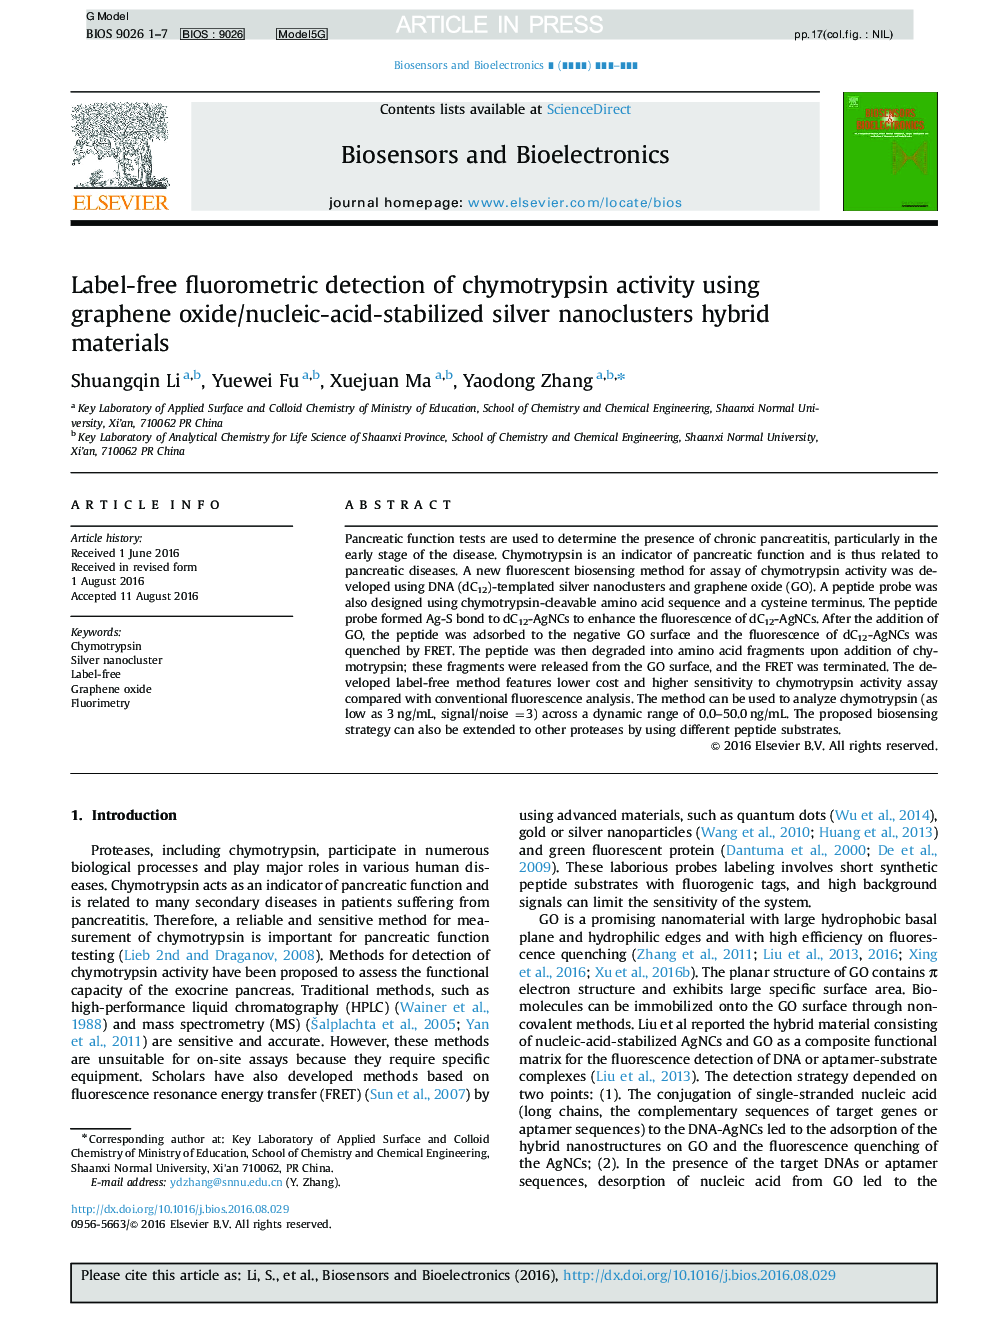 تشخیص فلوئورومتریک بدون برچسب از فعالیت کیموتریپسین با استفاده از مواد هیبرید نانوکلاسترهای نقره تثبیت شده با اکسید گرافن / اسید پاشی 